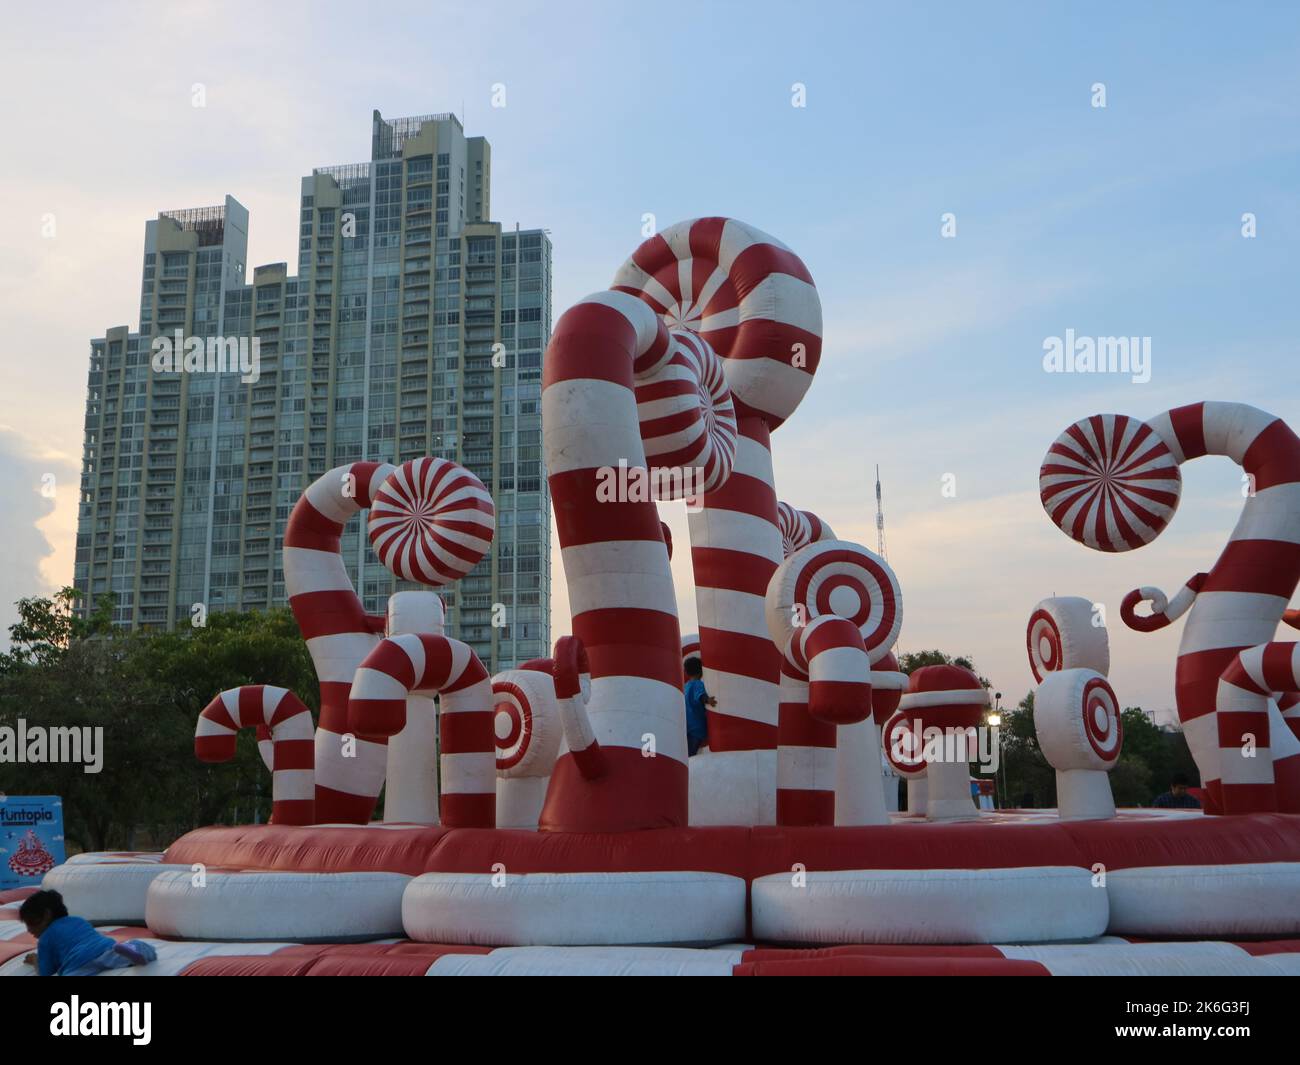 Ballons de saut gonflables géants de différentes formes pour les enfants à jouer. (Surabaya, Indonésie - 03 novembre 2018) Banque D'Images